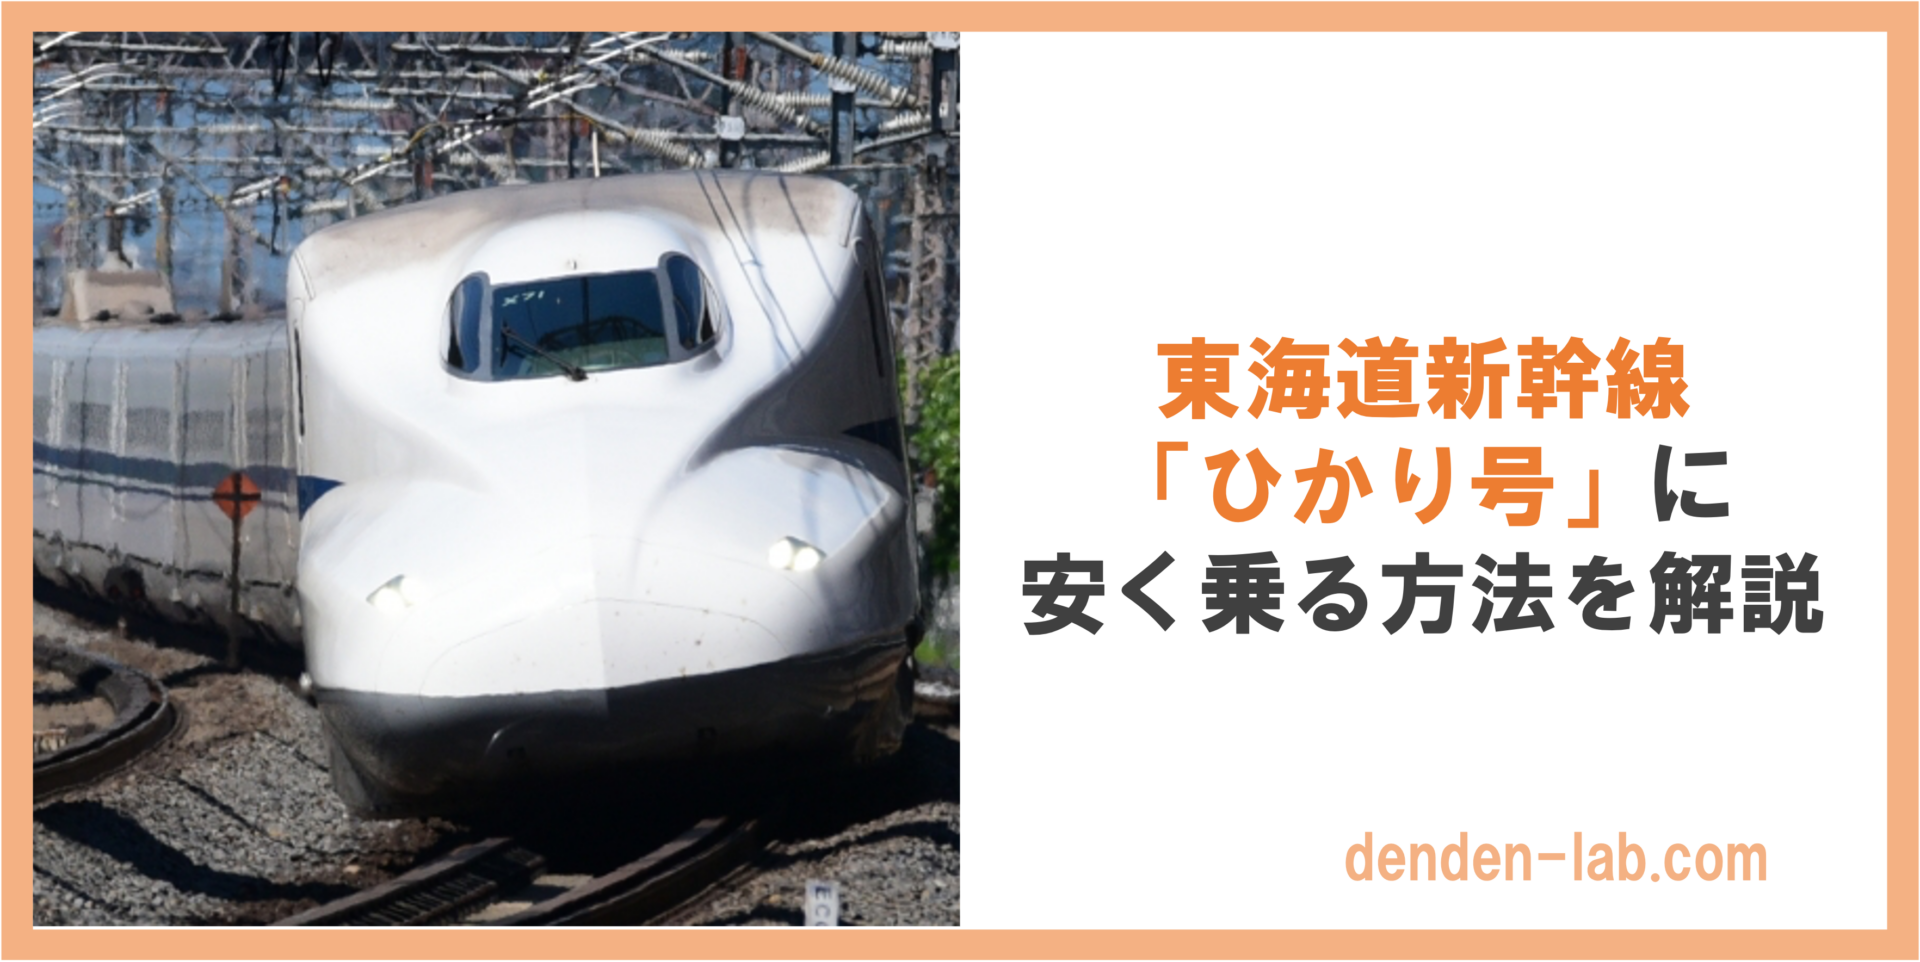 東海道新幹線 「ひかり号」に 安く乗る方法を解説